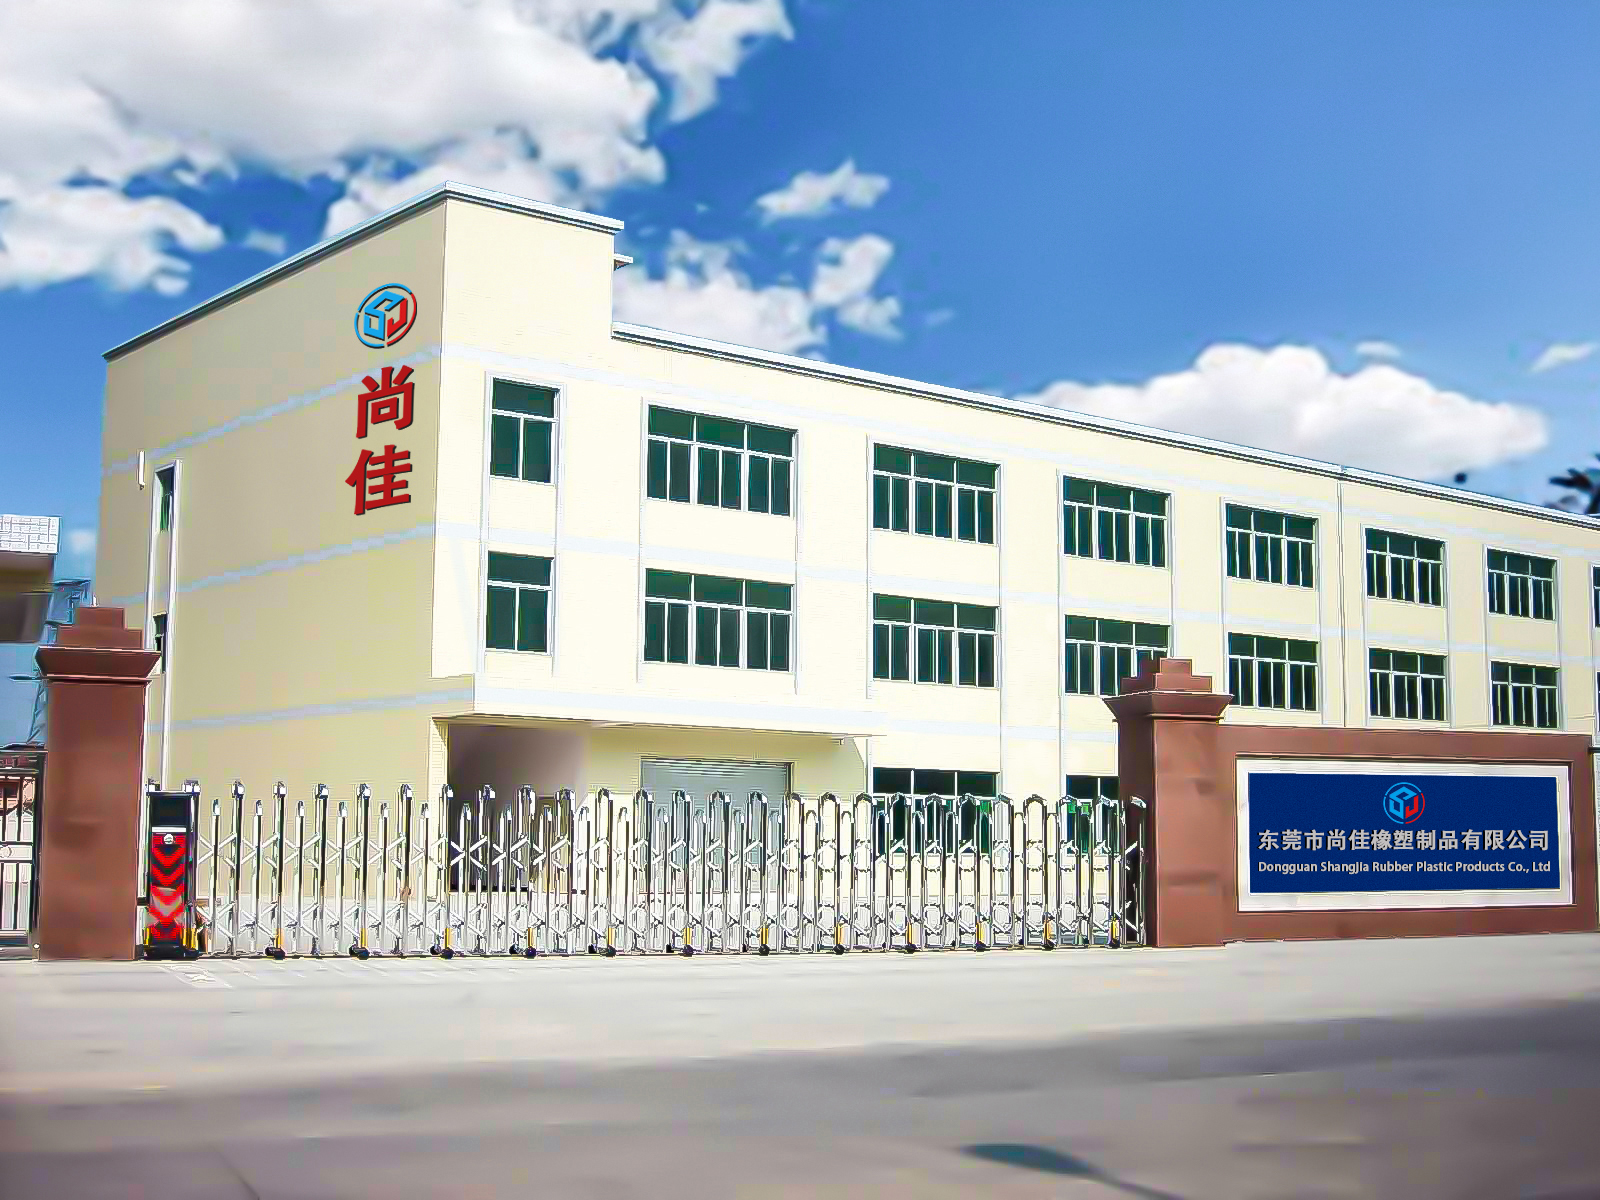 Firwat Wielt Dongguan Shangjia Als Är Custom Factory?